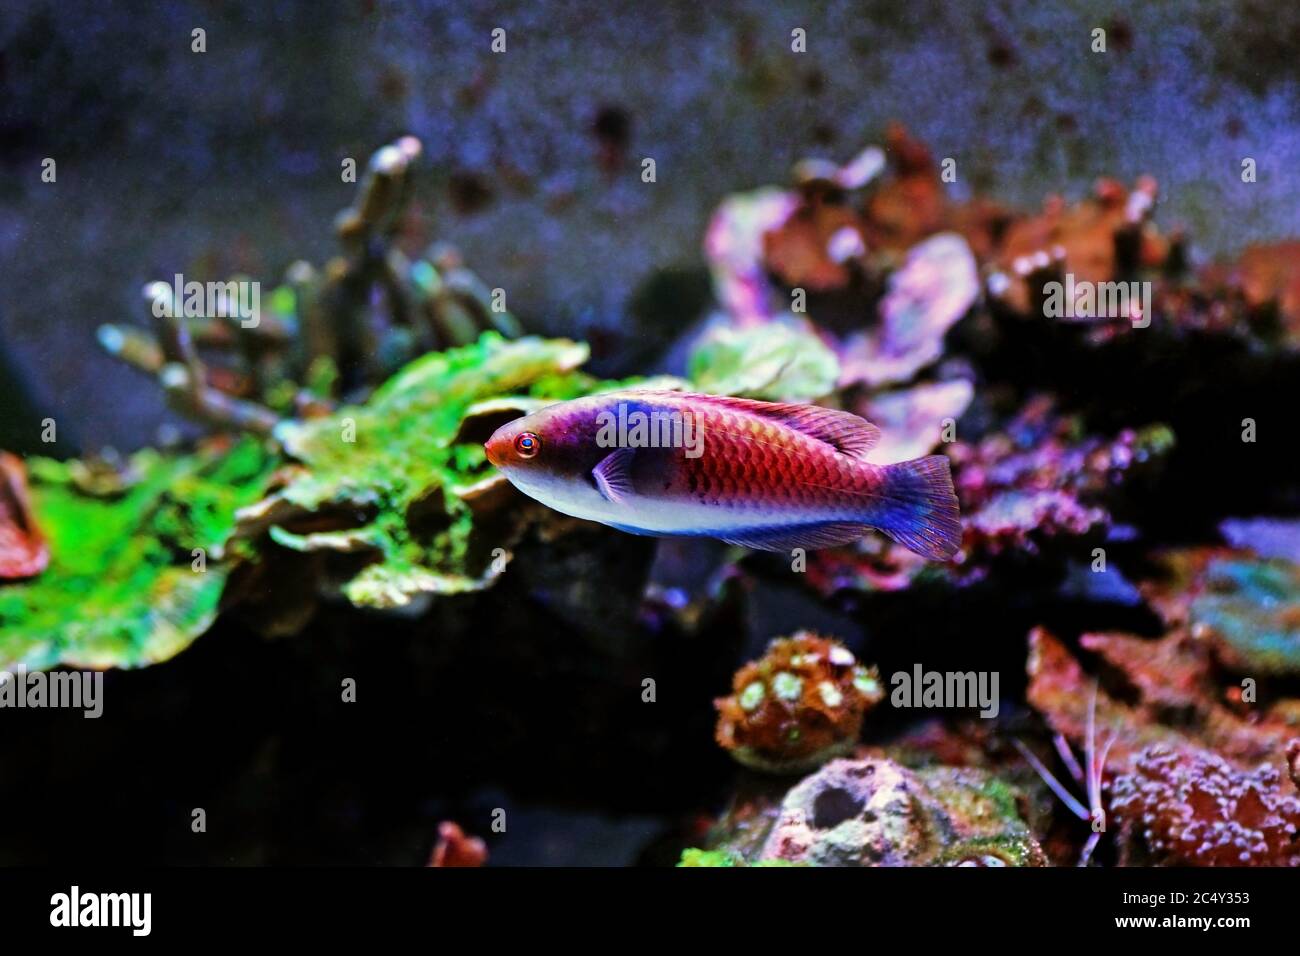 Blue face wrasse saltwater fish in aquarium Stock Photo